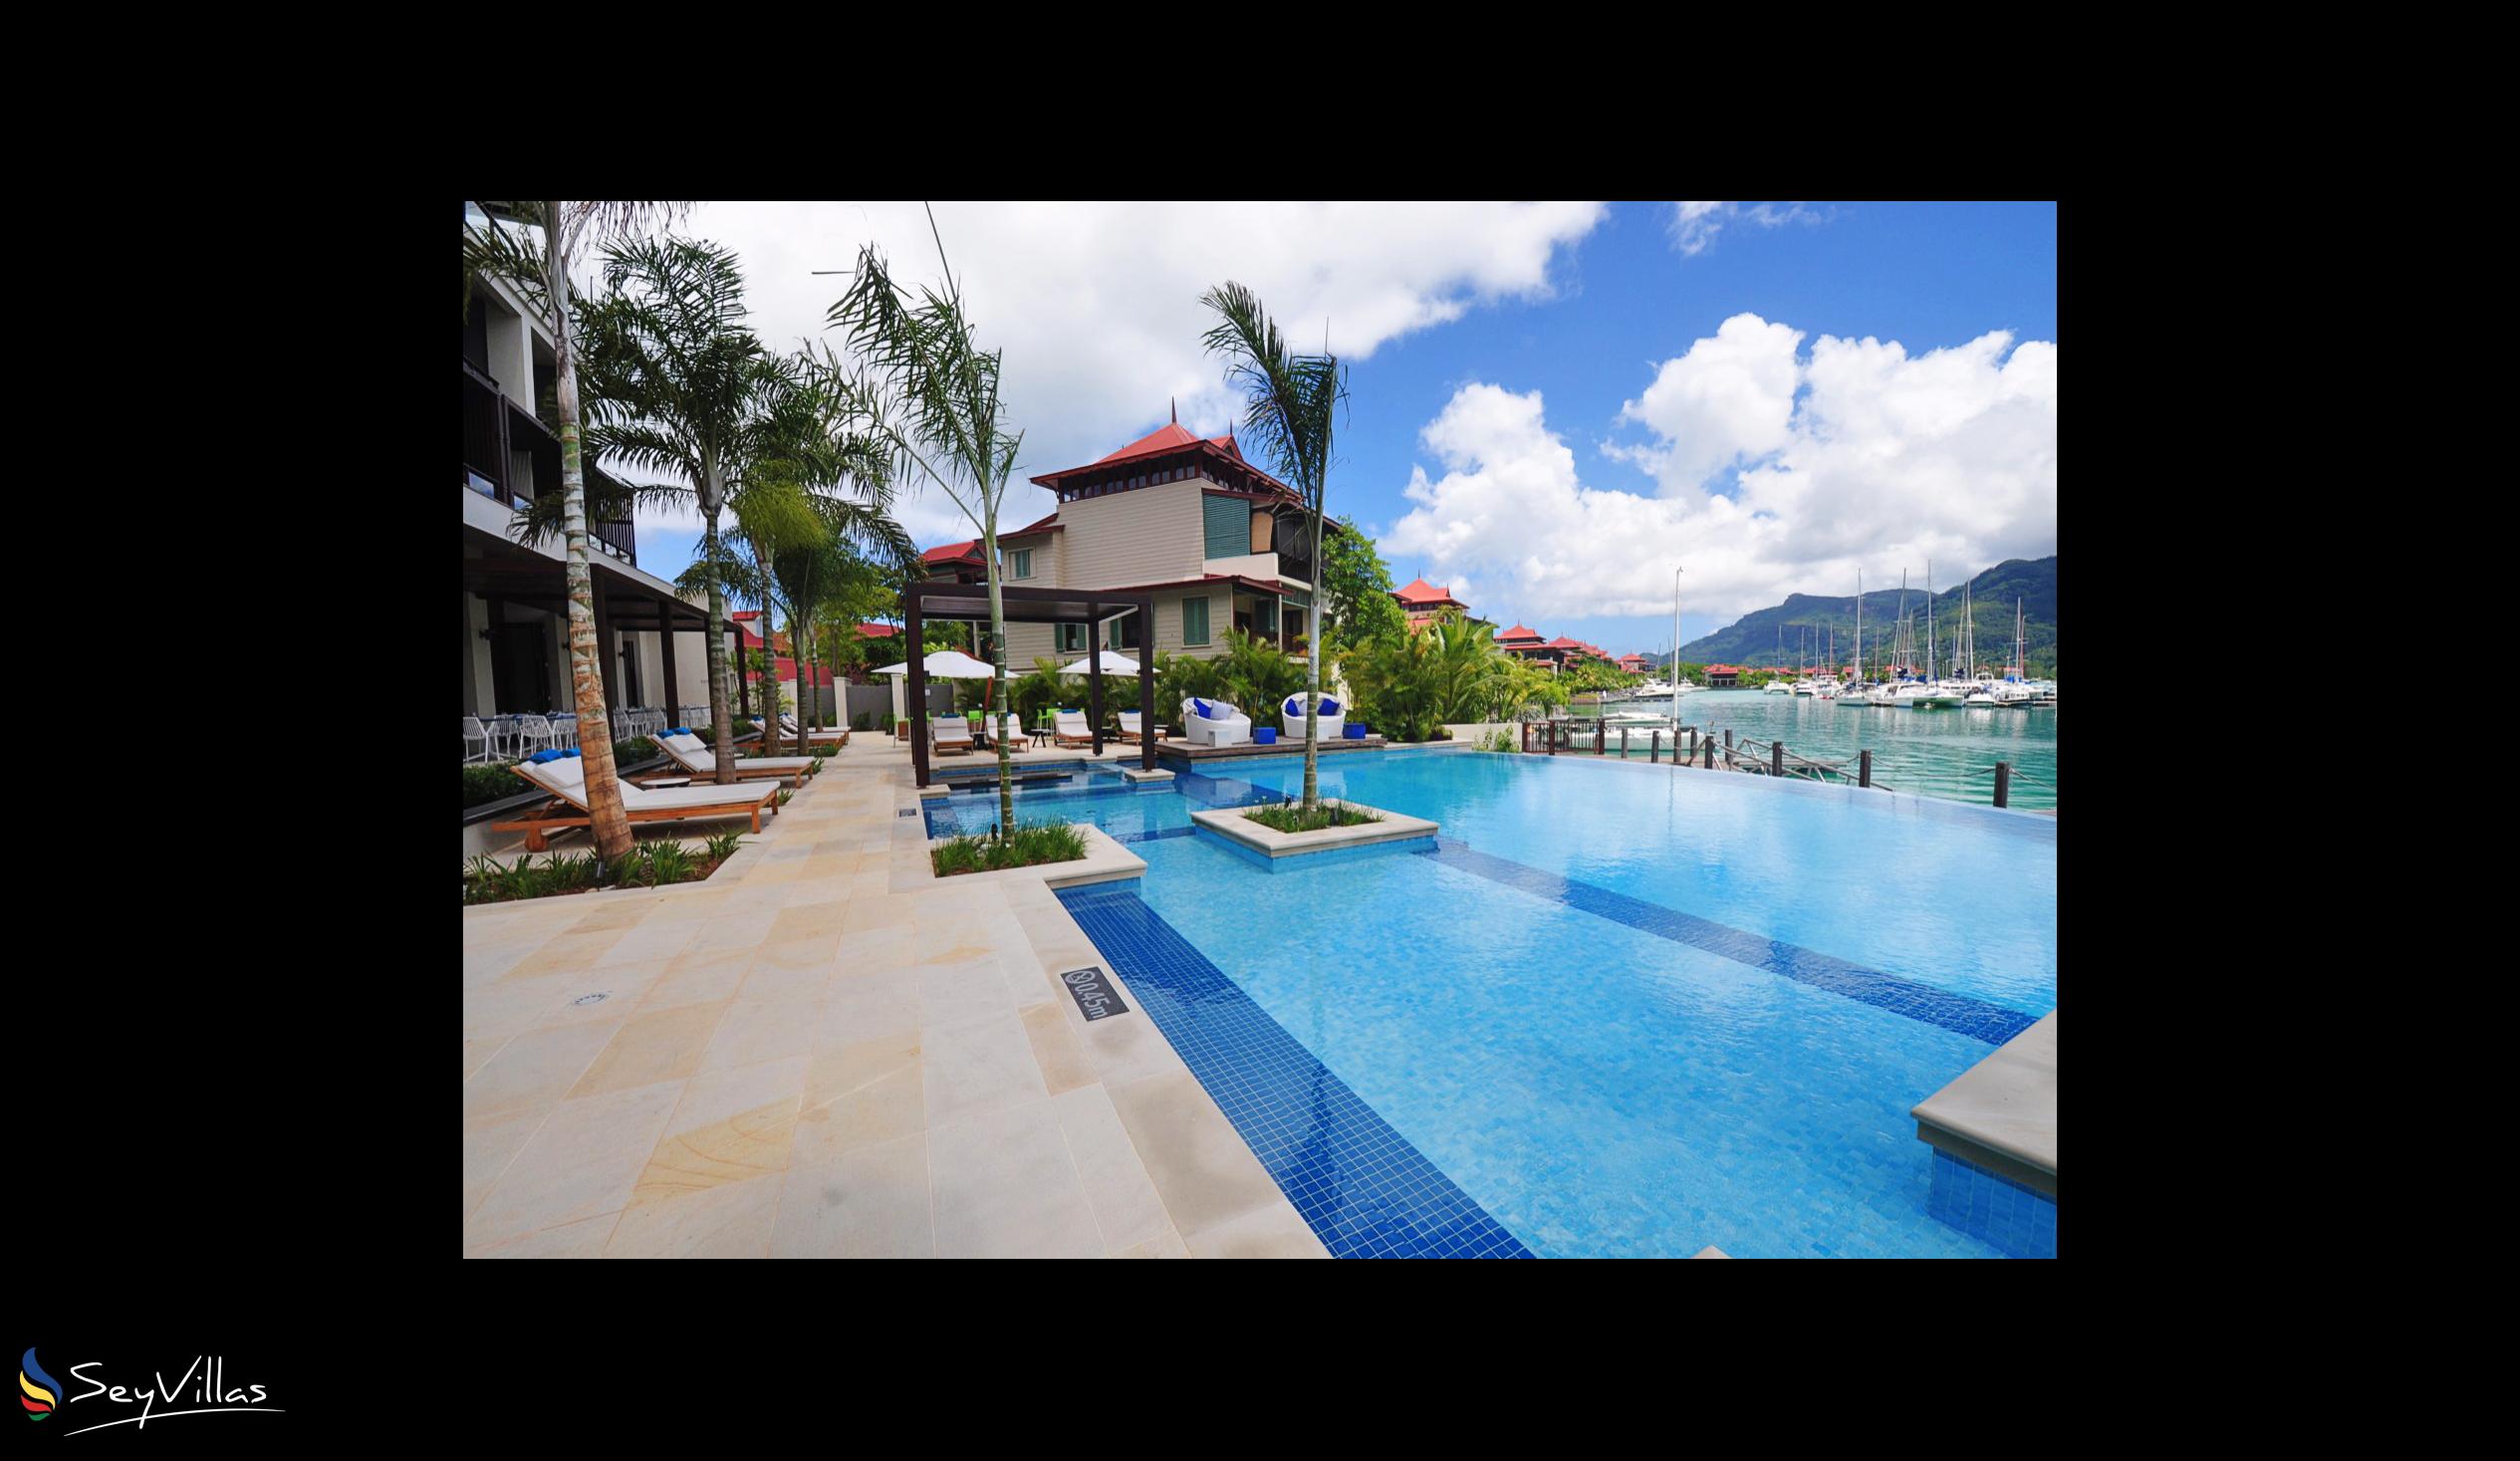 Photo 7: Eden Bleu Hotel - Outdoor area - Mahé (Seychelles)